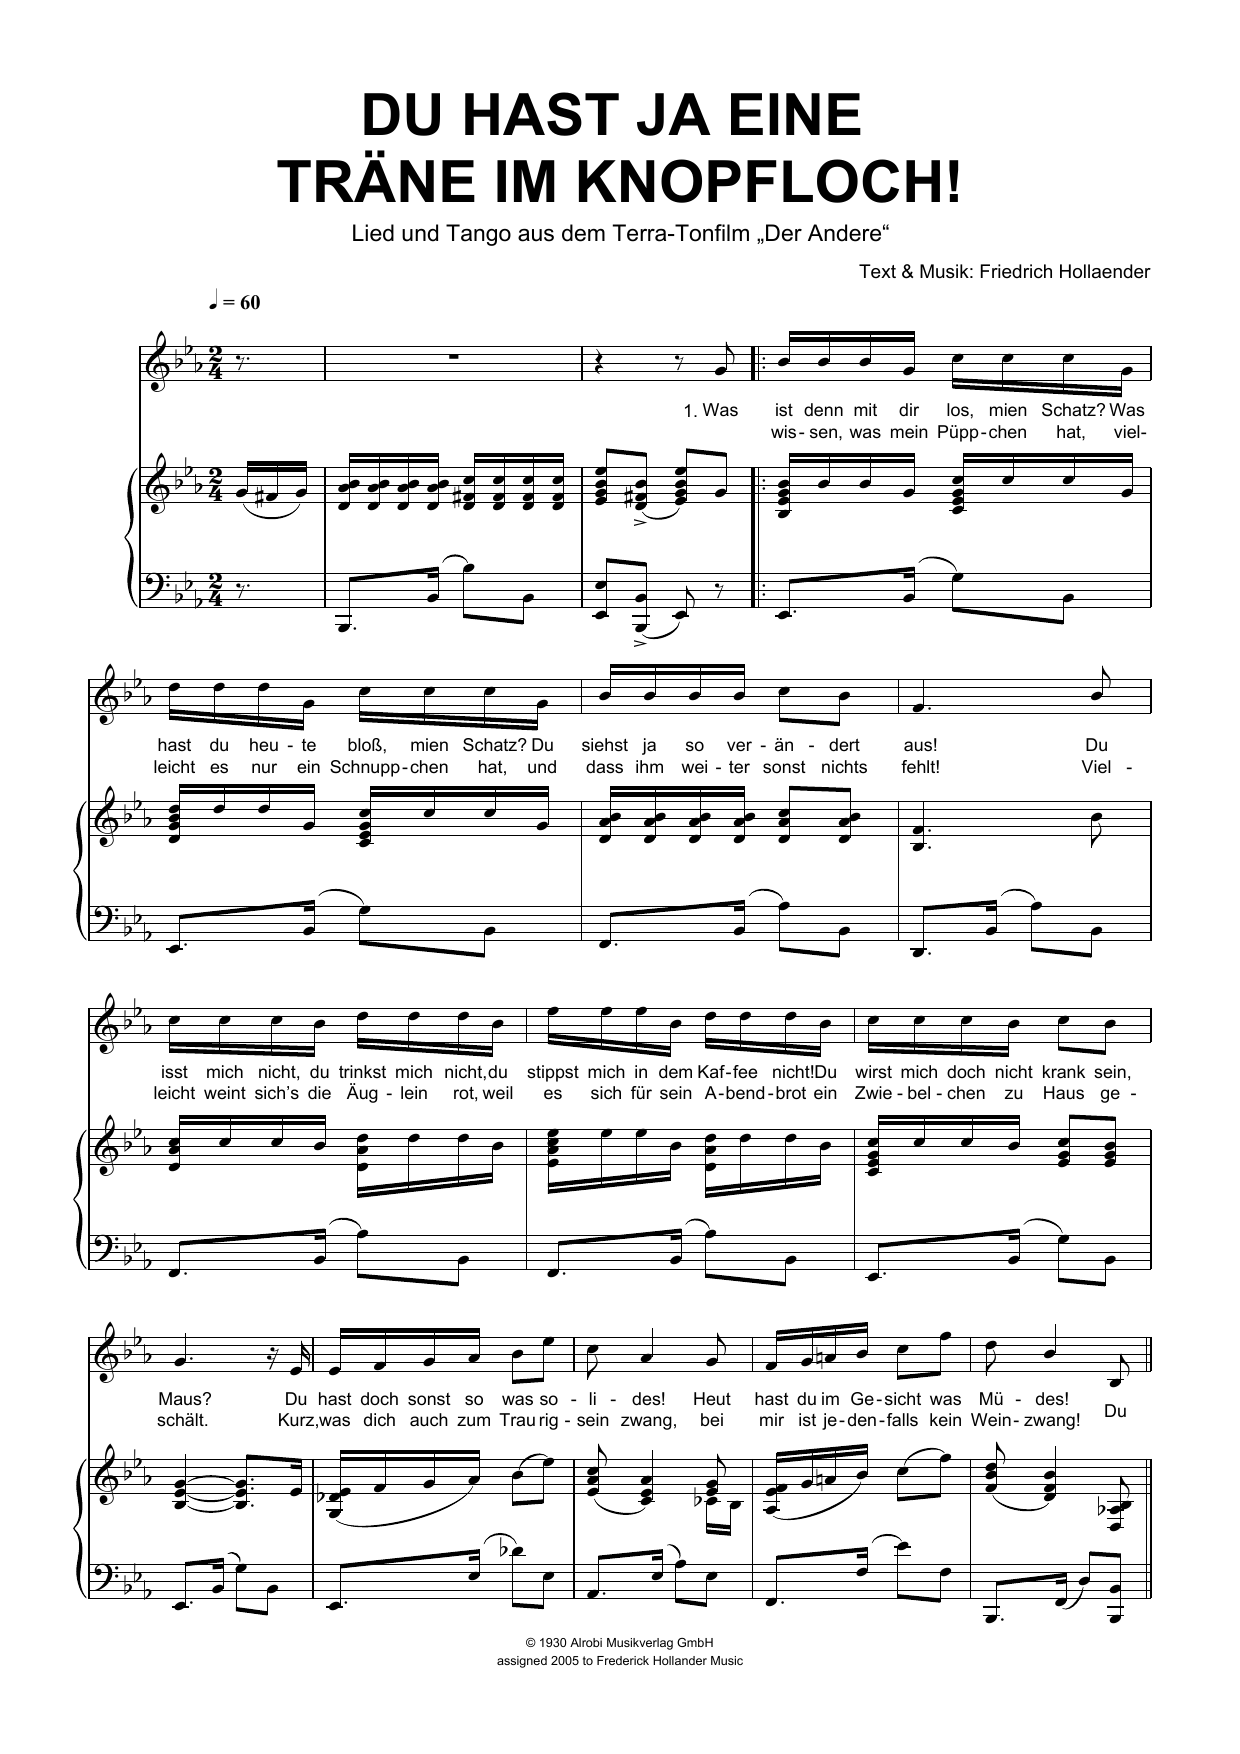 Download Friedrich Hollaender Du Hast Ja Eine Träne Im Knopfloch! Sheet Music and learn how to play Piano & Vocal PDF digital score in minutes